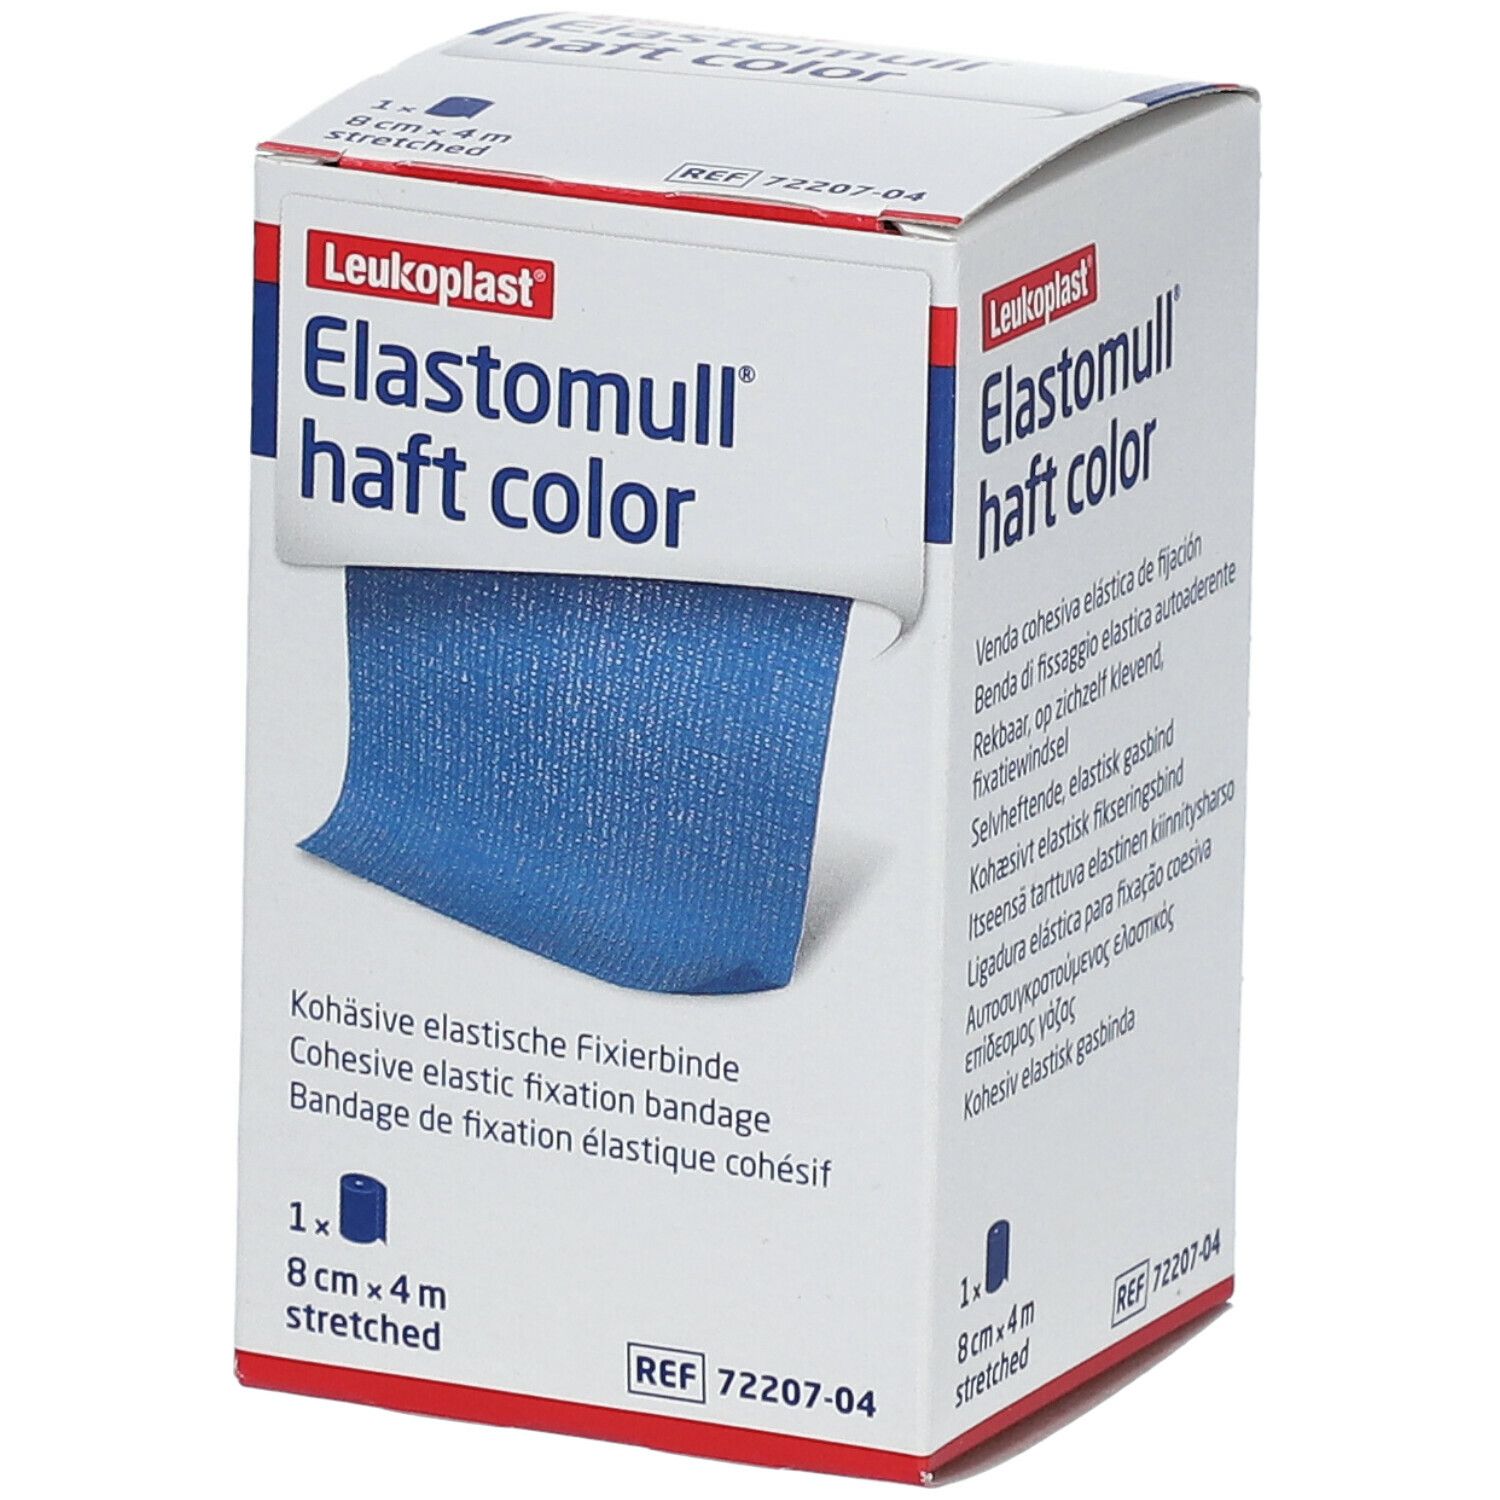 Elastomull® haft color 8 cm x 4 m blau